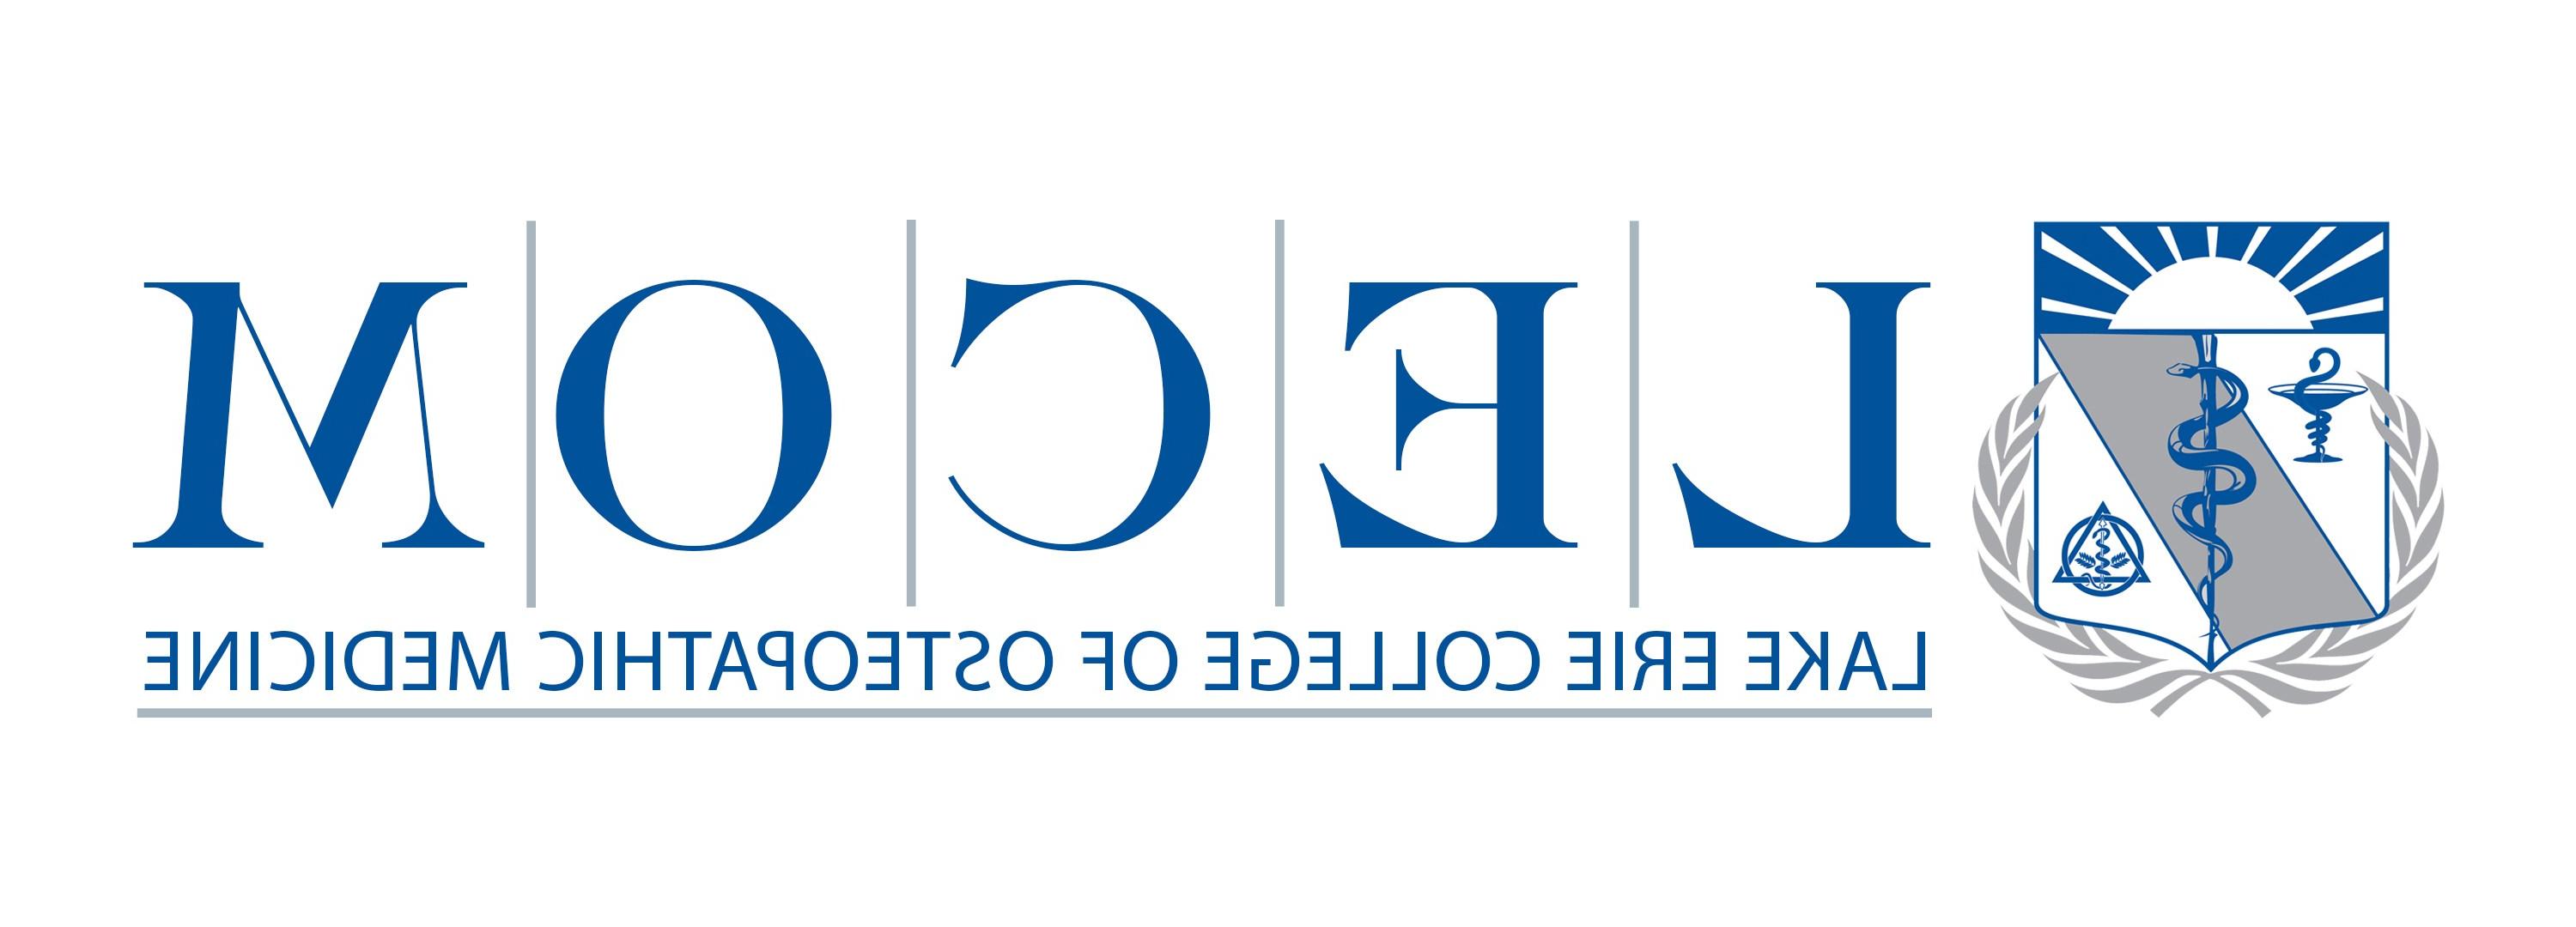 Offer Lecom Logo Shield Image